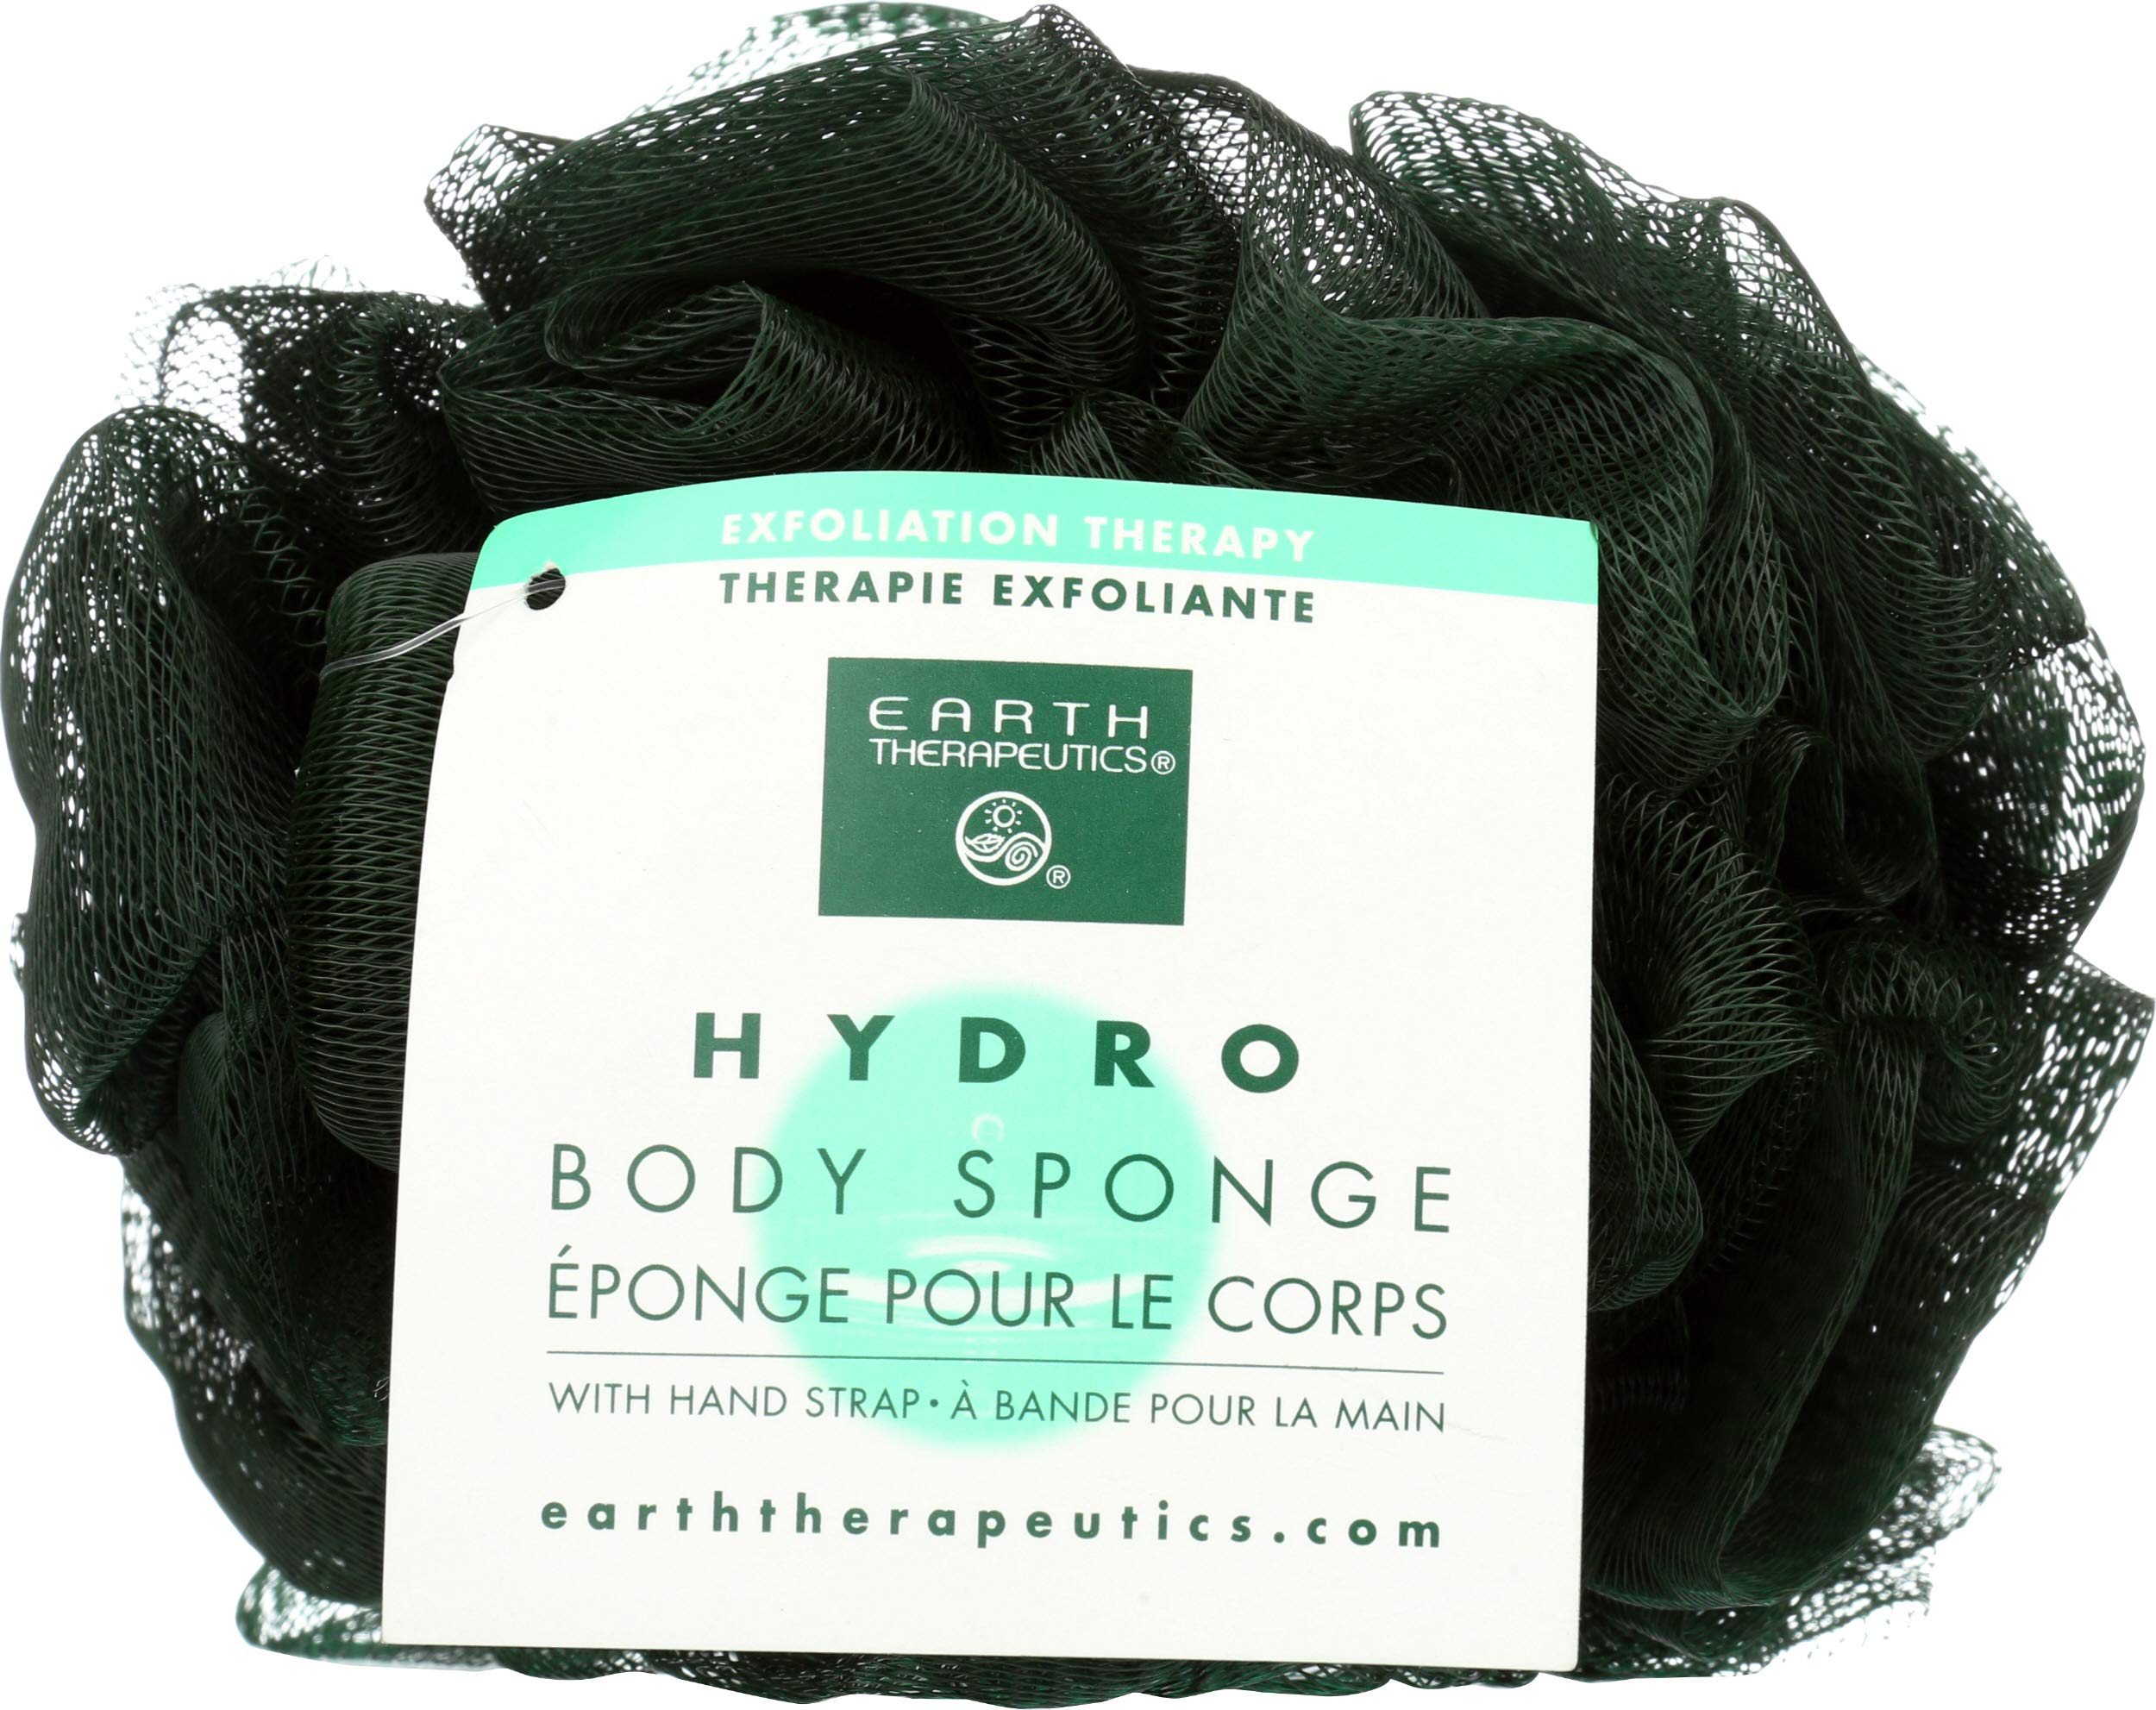 EARTH THERAPEUTICS Dark Green Hydro Body Sponge, 1 EA